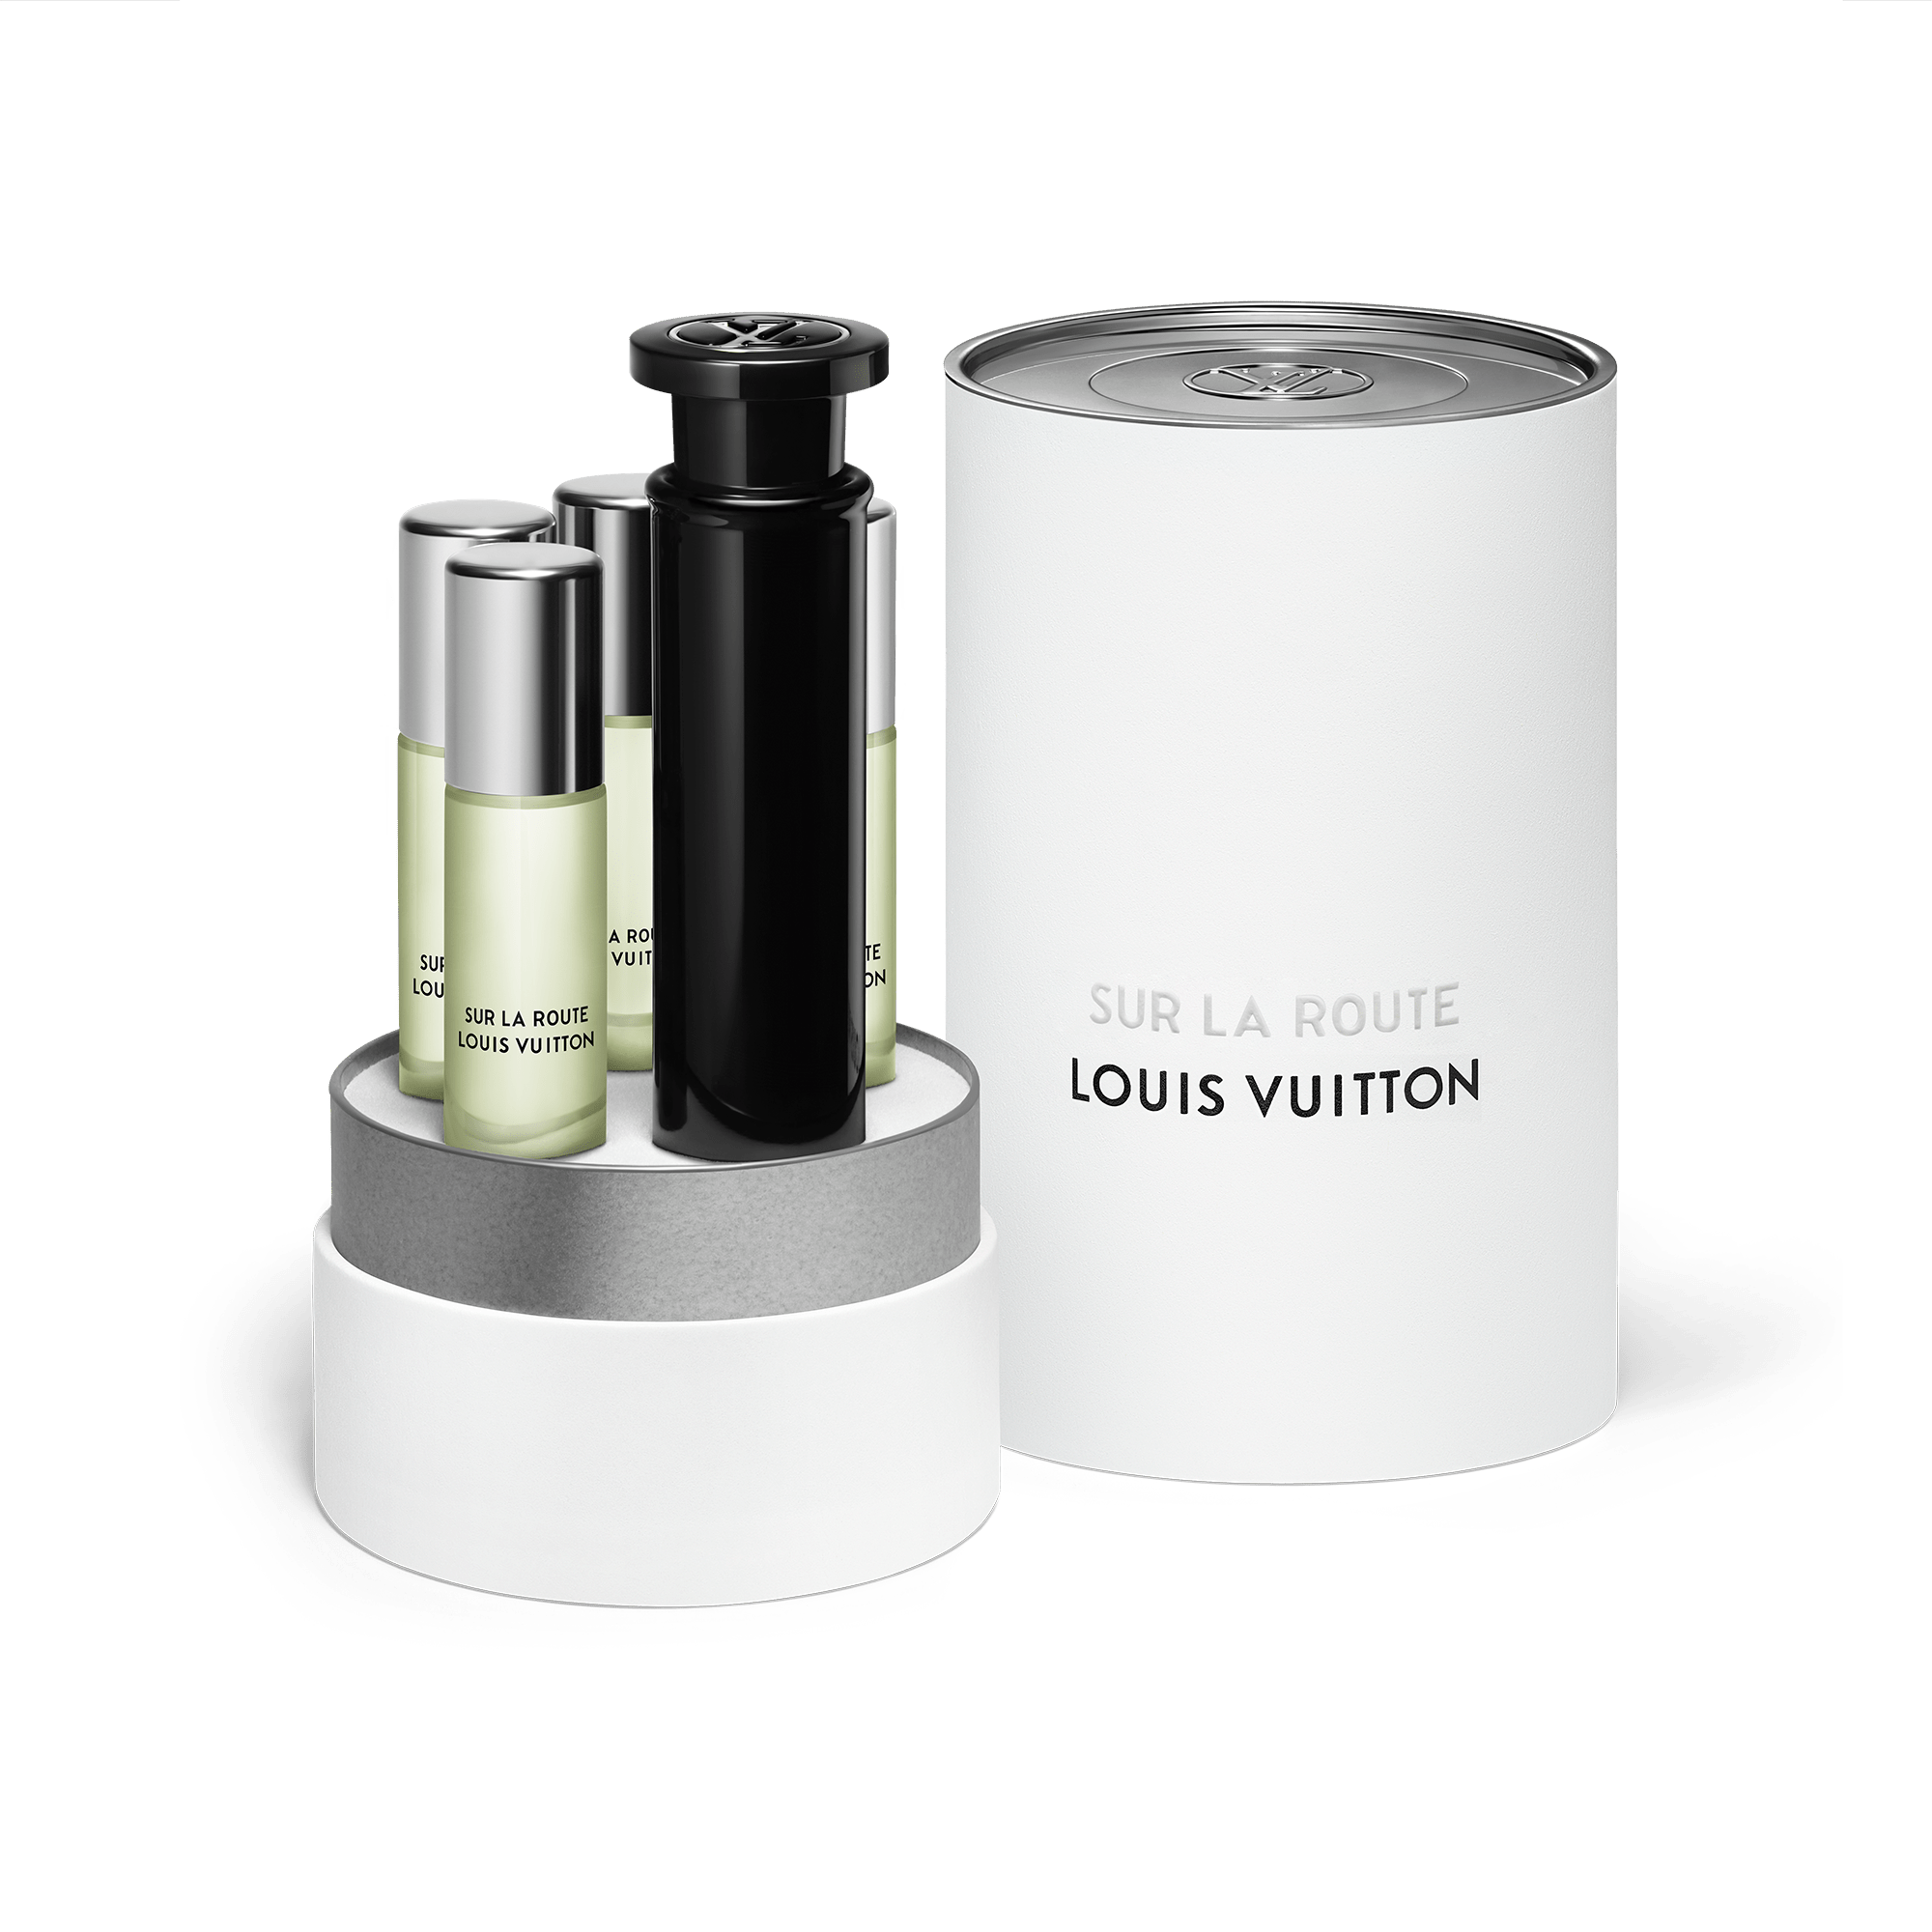 Louis Vuitton Sur La Route EDP | My Perfume Shop Australia